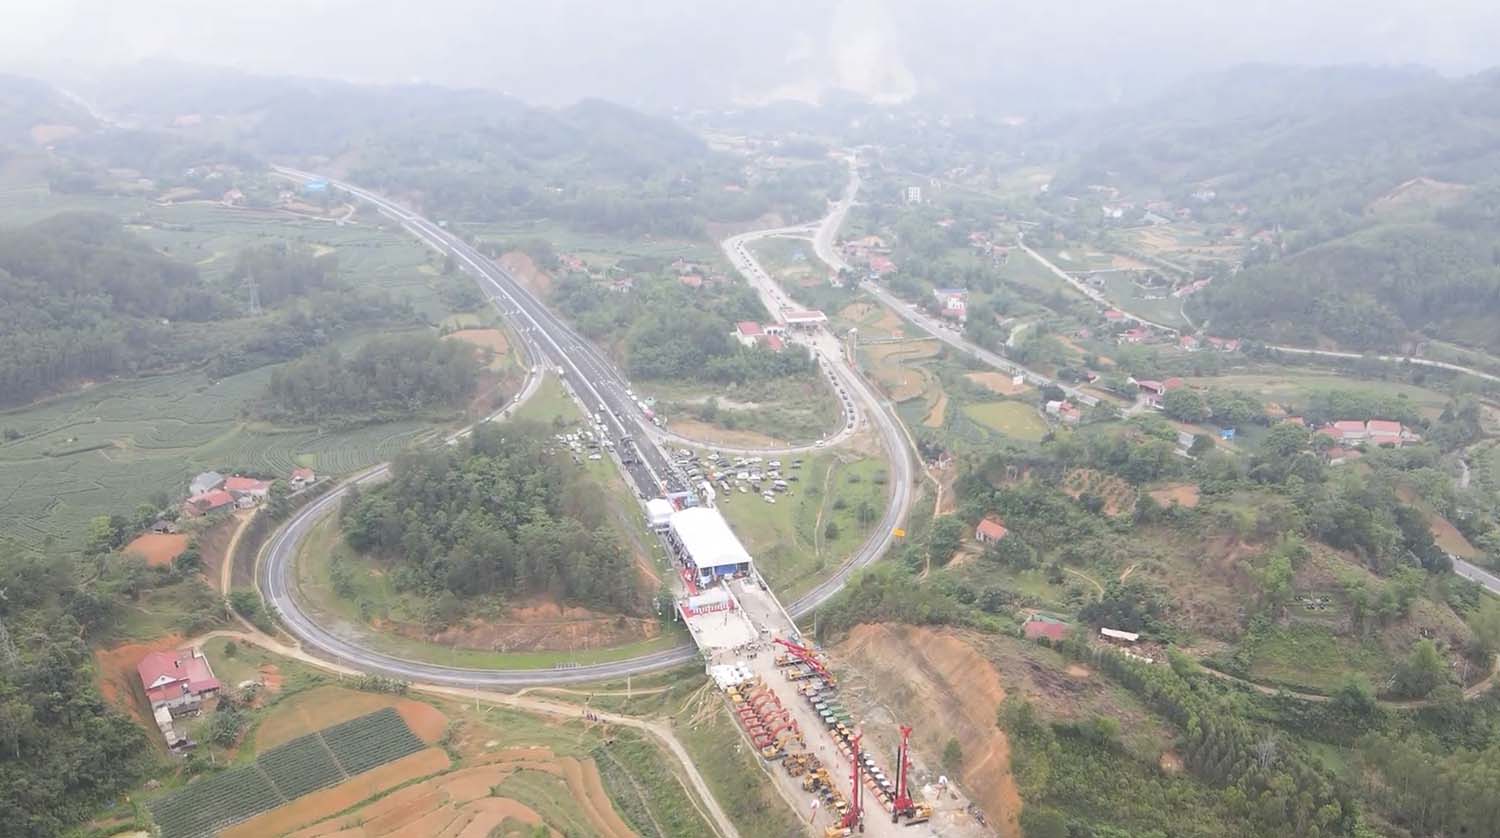 Dự án tuyến cao tốc cửa khẩu Hữu Nghị - Chi Lăng được thực hiện trên địa bàn các huyện: Chi Lăng, Cao Lộc, Văn Lãng và Thành phố Lạng Sơn; có tổng chiều dài gần 60 km. Ảnh: Bùi Thơm